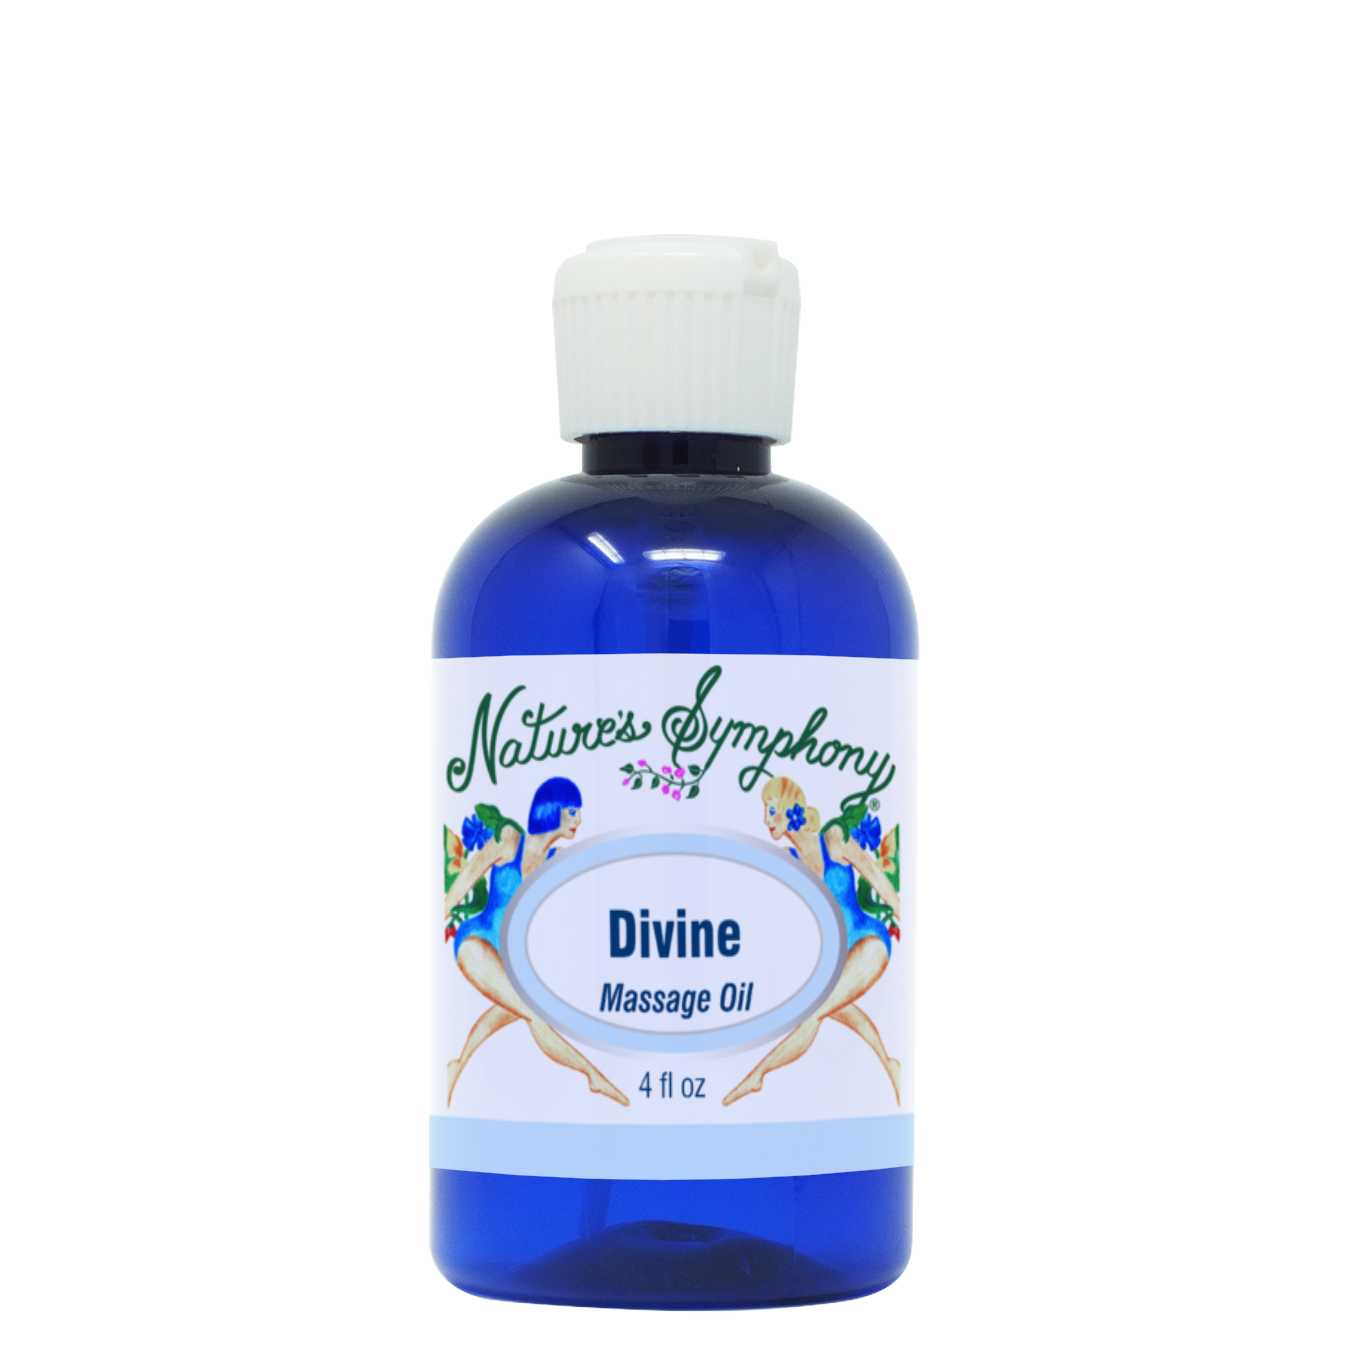 Divine, Unscented Massage Oil - 4 fl. oz. (118ml)